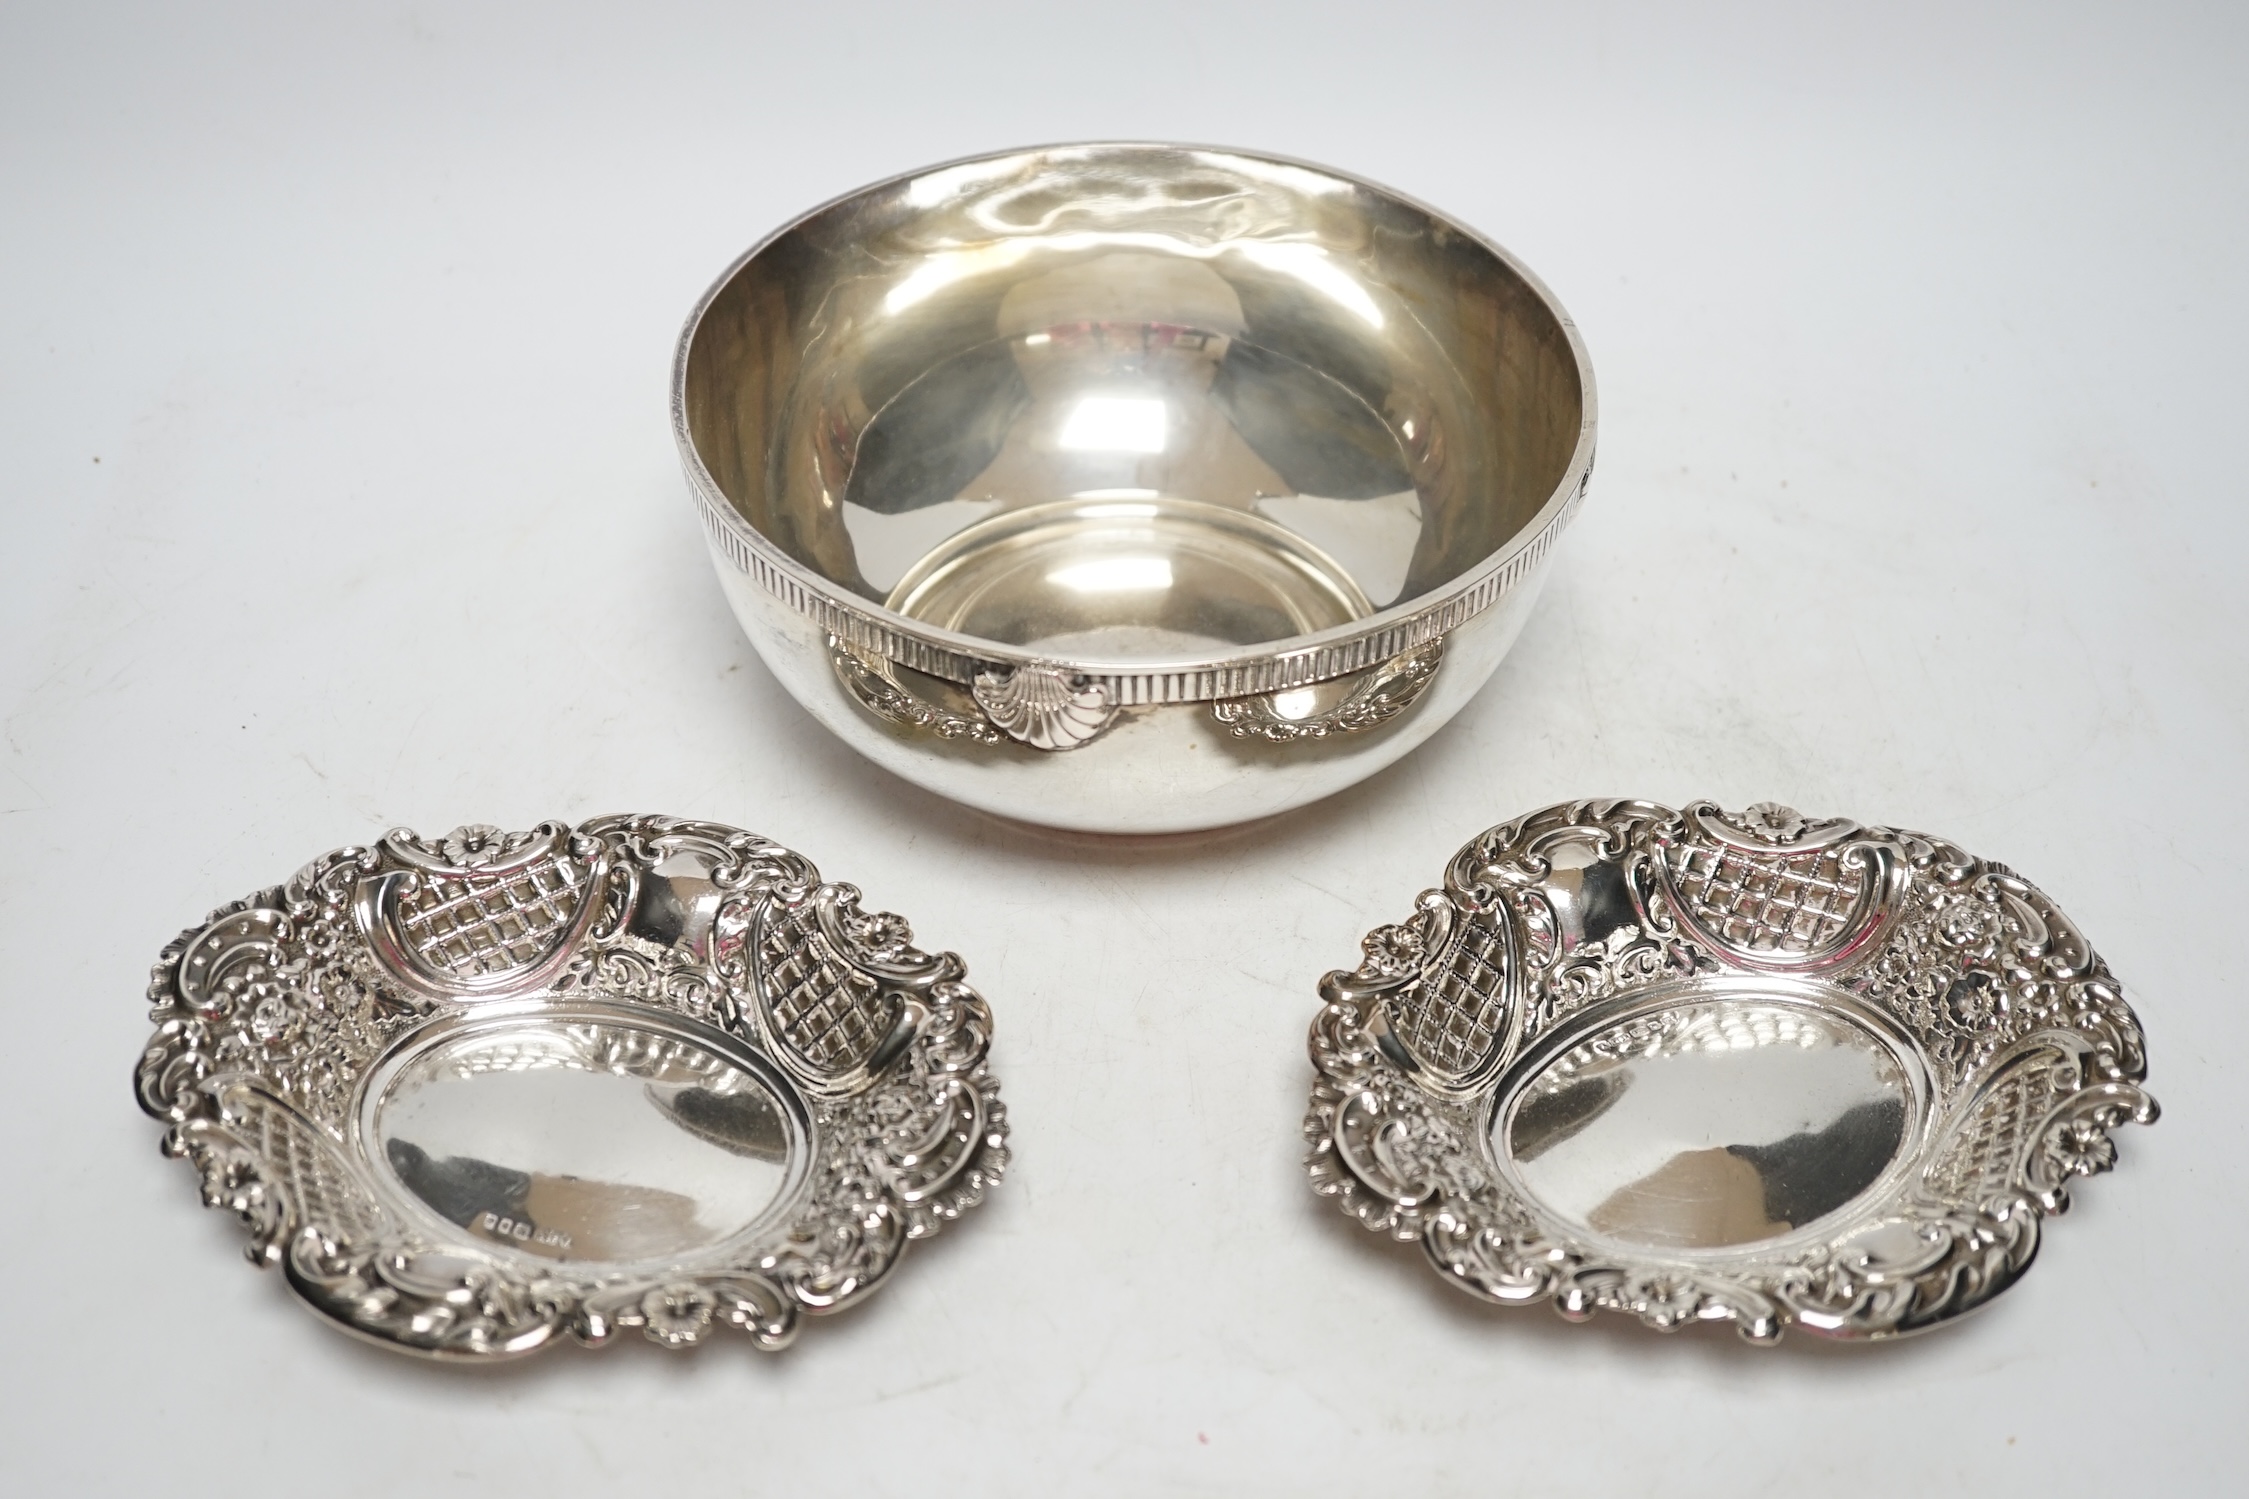 An 800 standard white metal bowl, diameter 17.3cm and a pair of George V pierced silver bonbon dishes, 18.7oz. Fair condition.